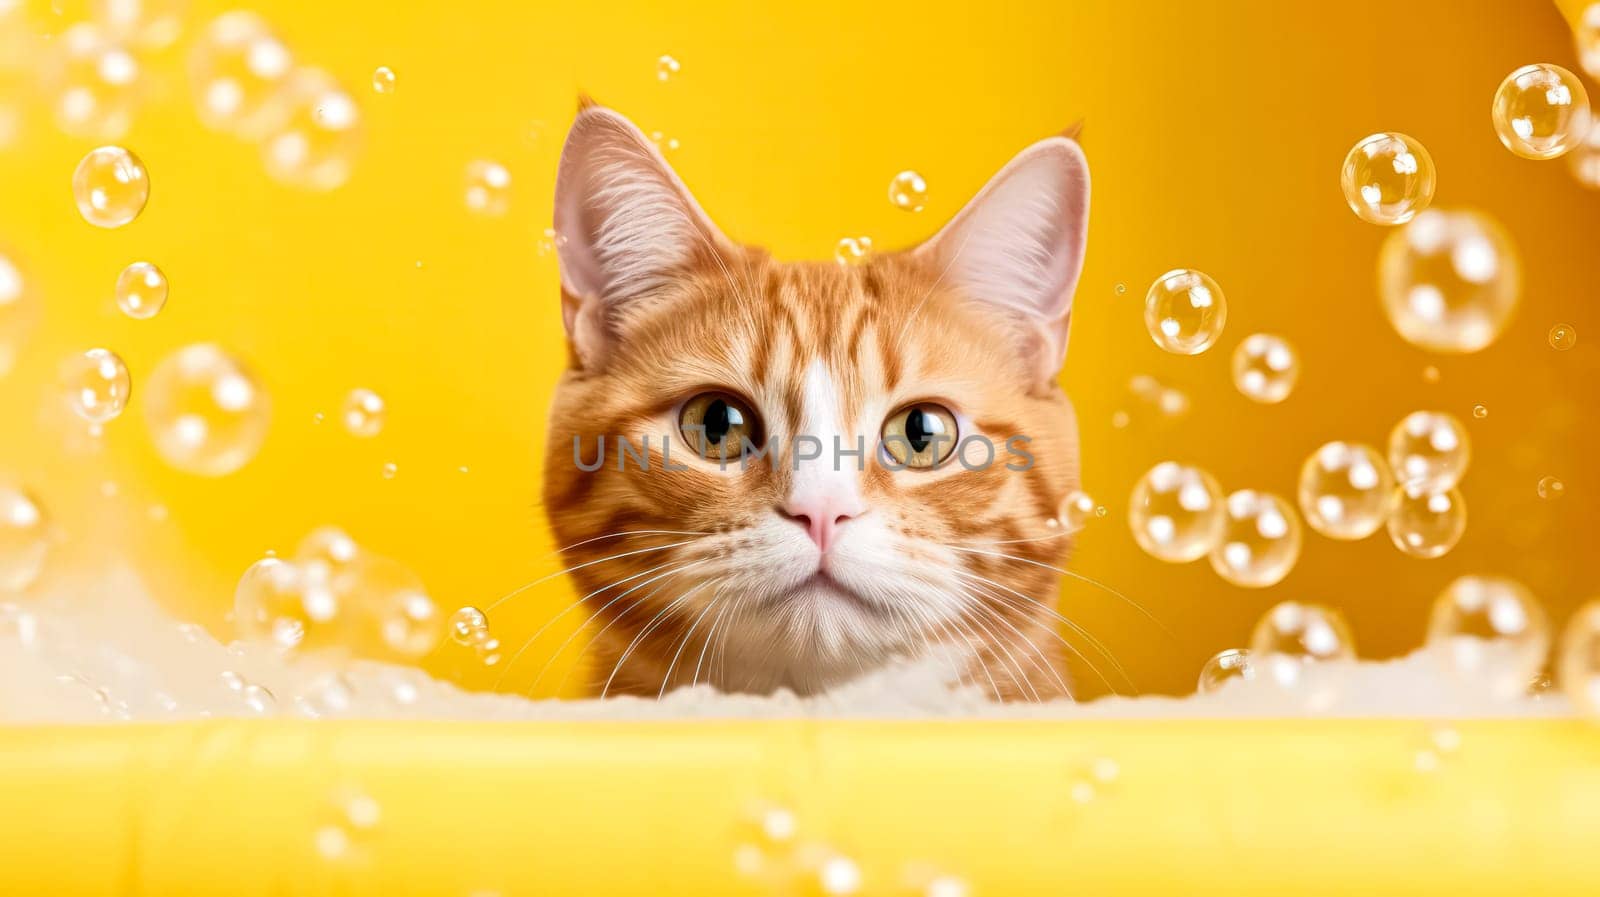 A playful red cat enjoys a bubbly bath in a bathtub by Alla_Morozova93